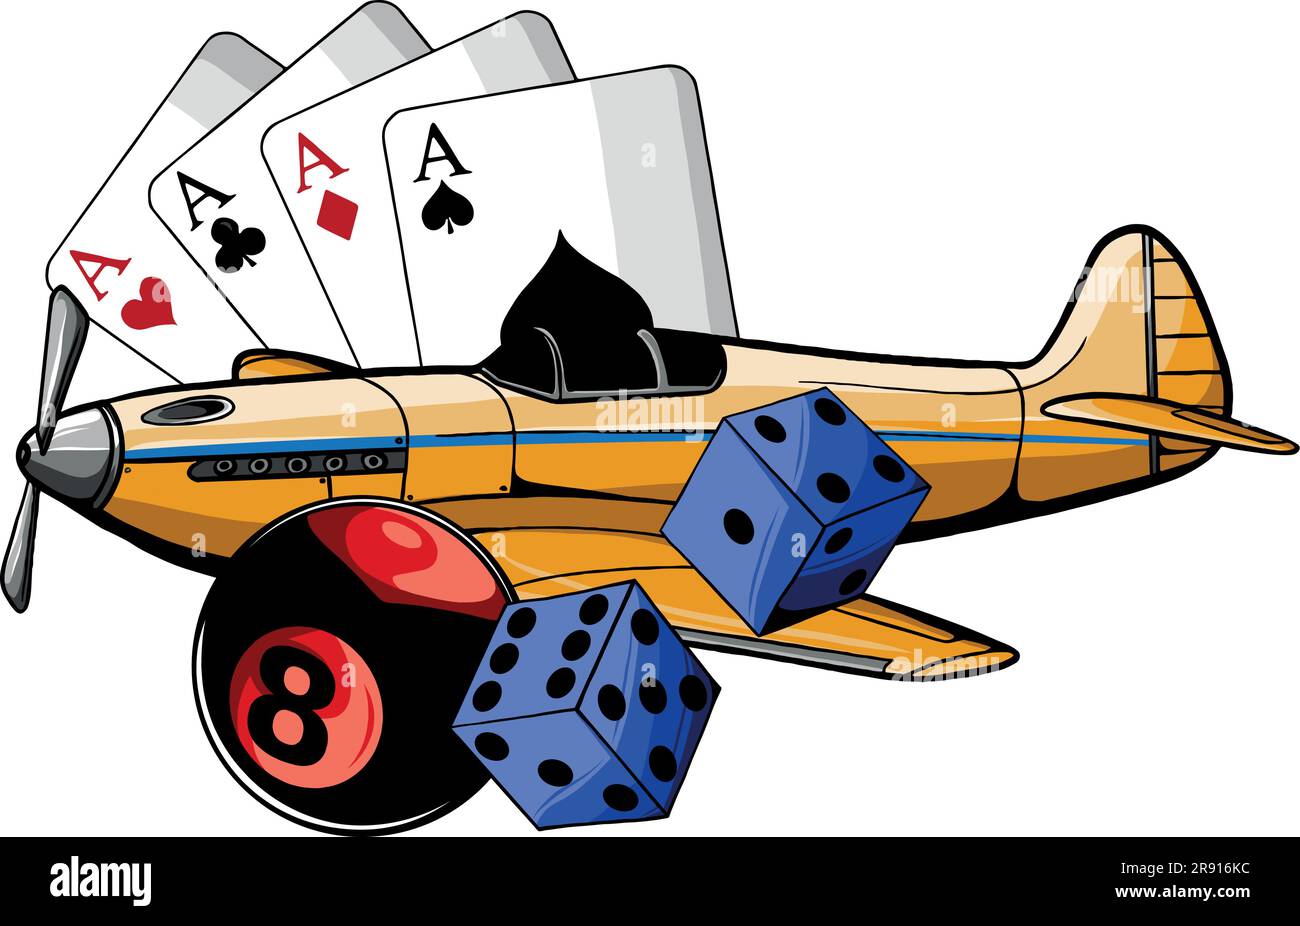 illustration vectorielle d'un avion de chasse avec jeu de pub Illustration de Vecteur